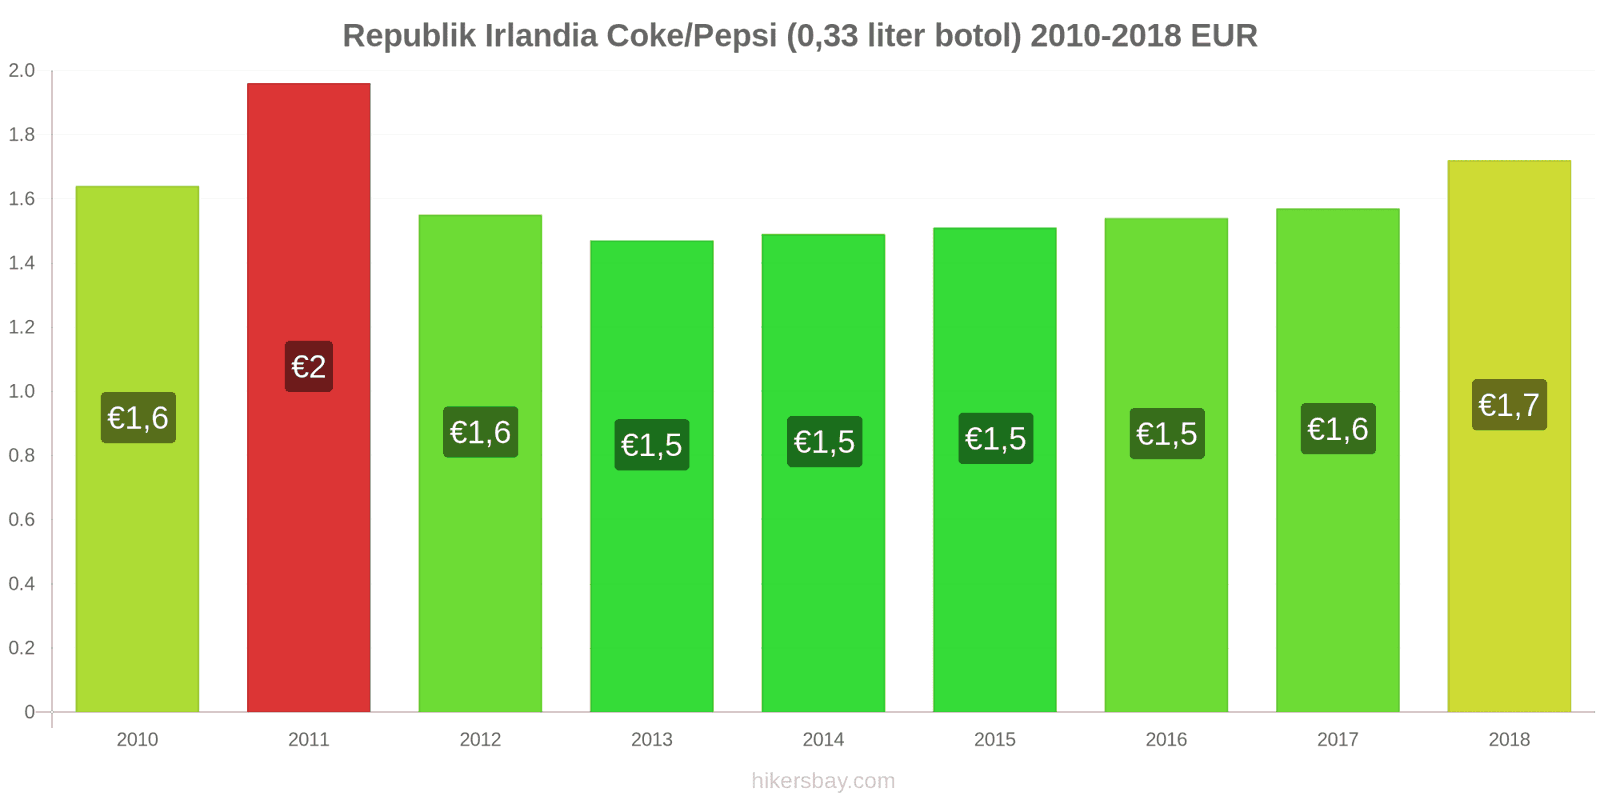 Republik Irlandia perubahan harga Coca-Cola/Pepsi (botol 0.33 liter) hikersbay.com